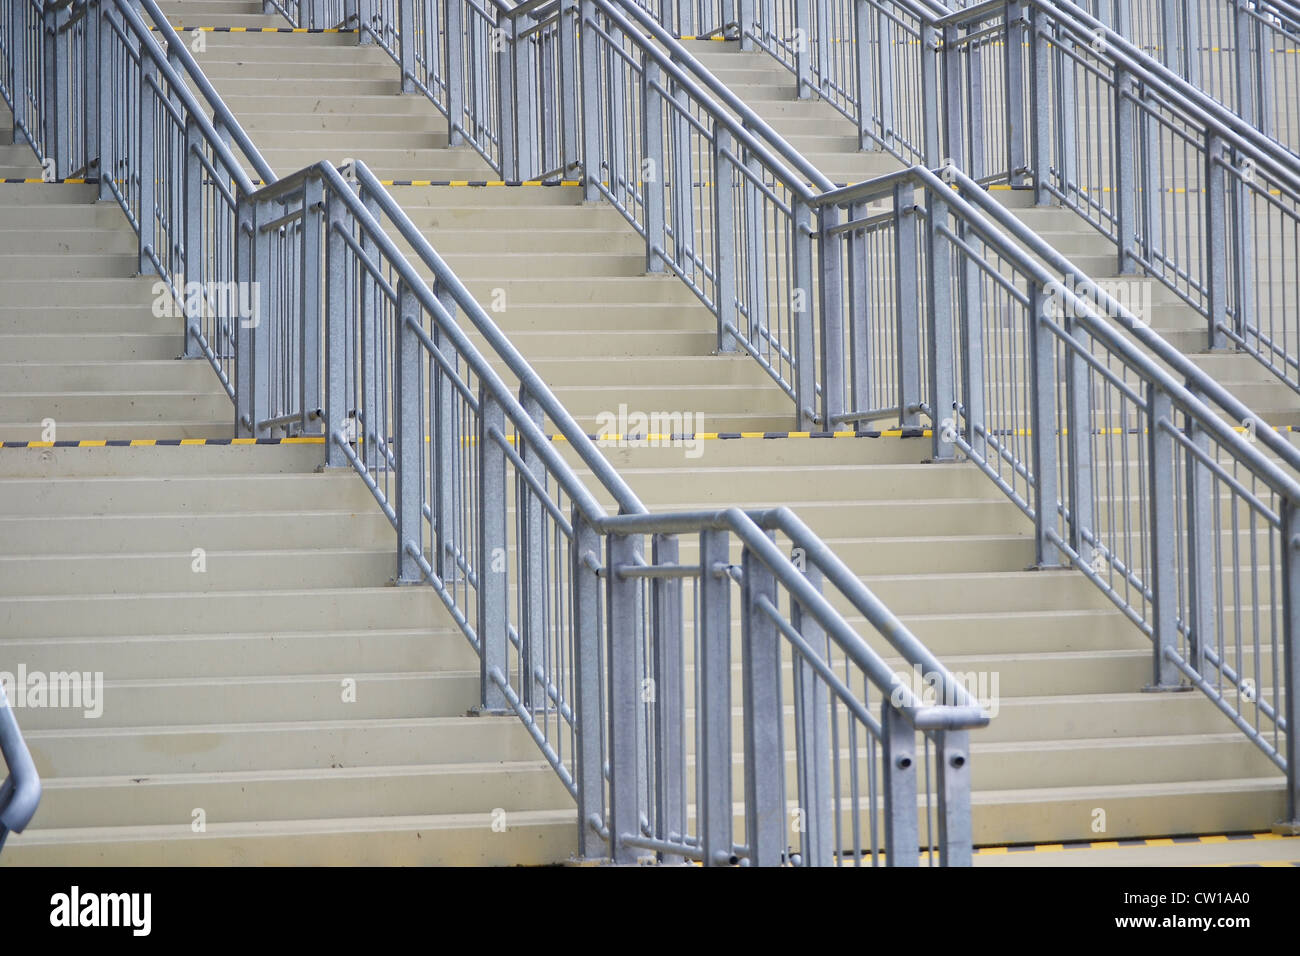 Las escaleras en el espacio público Foto de stock